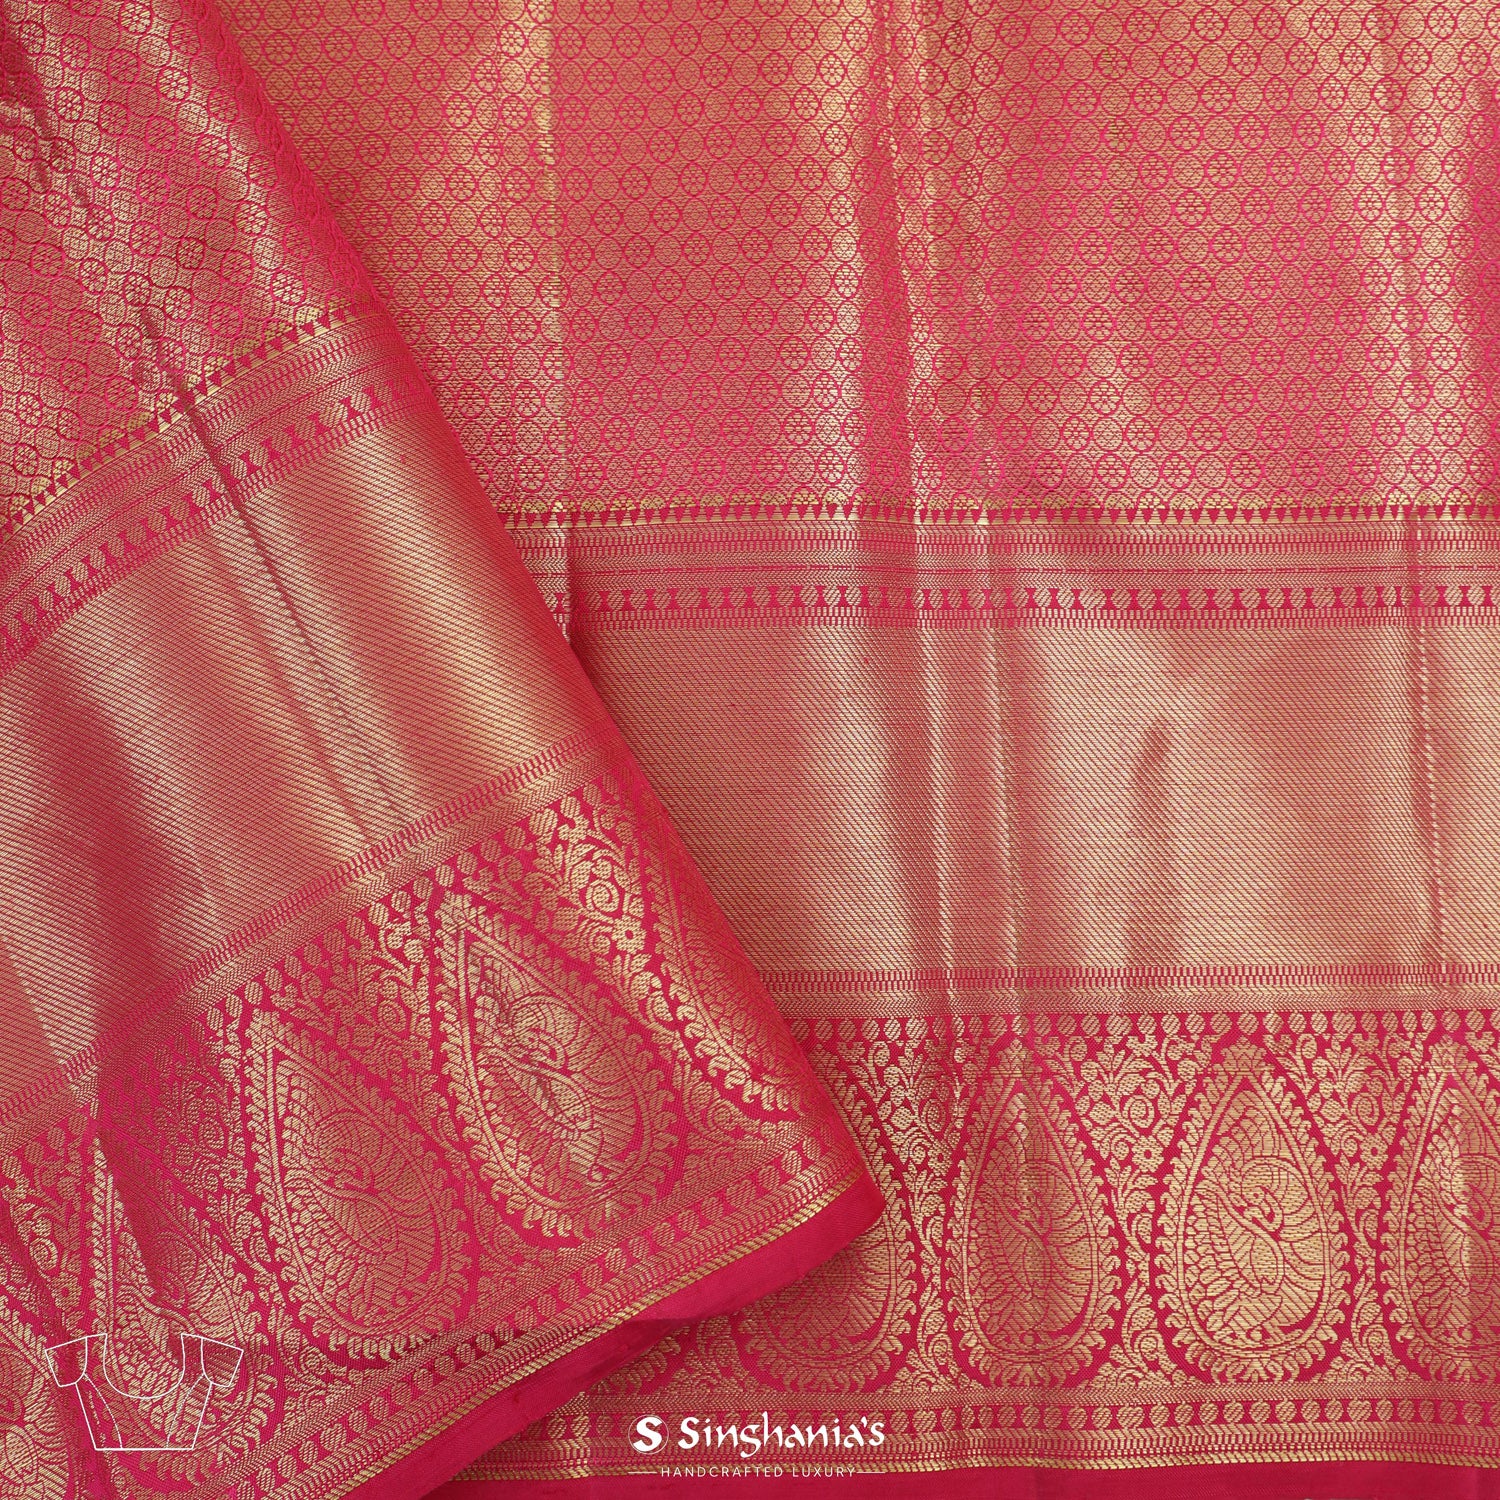 Old Rose Pink Kanjivaram Silk Saree With Floral Grid Pattern